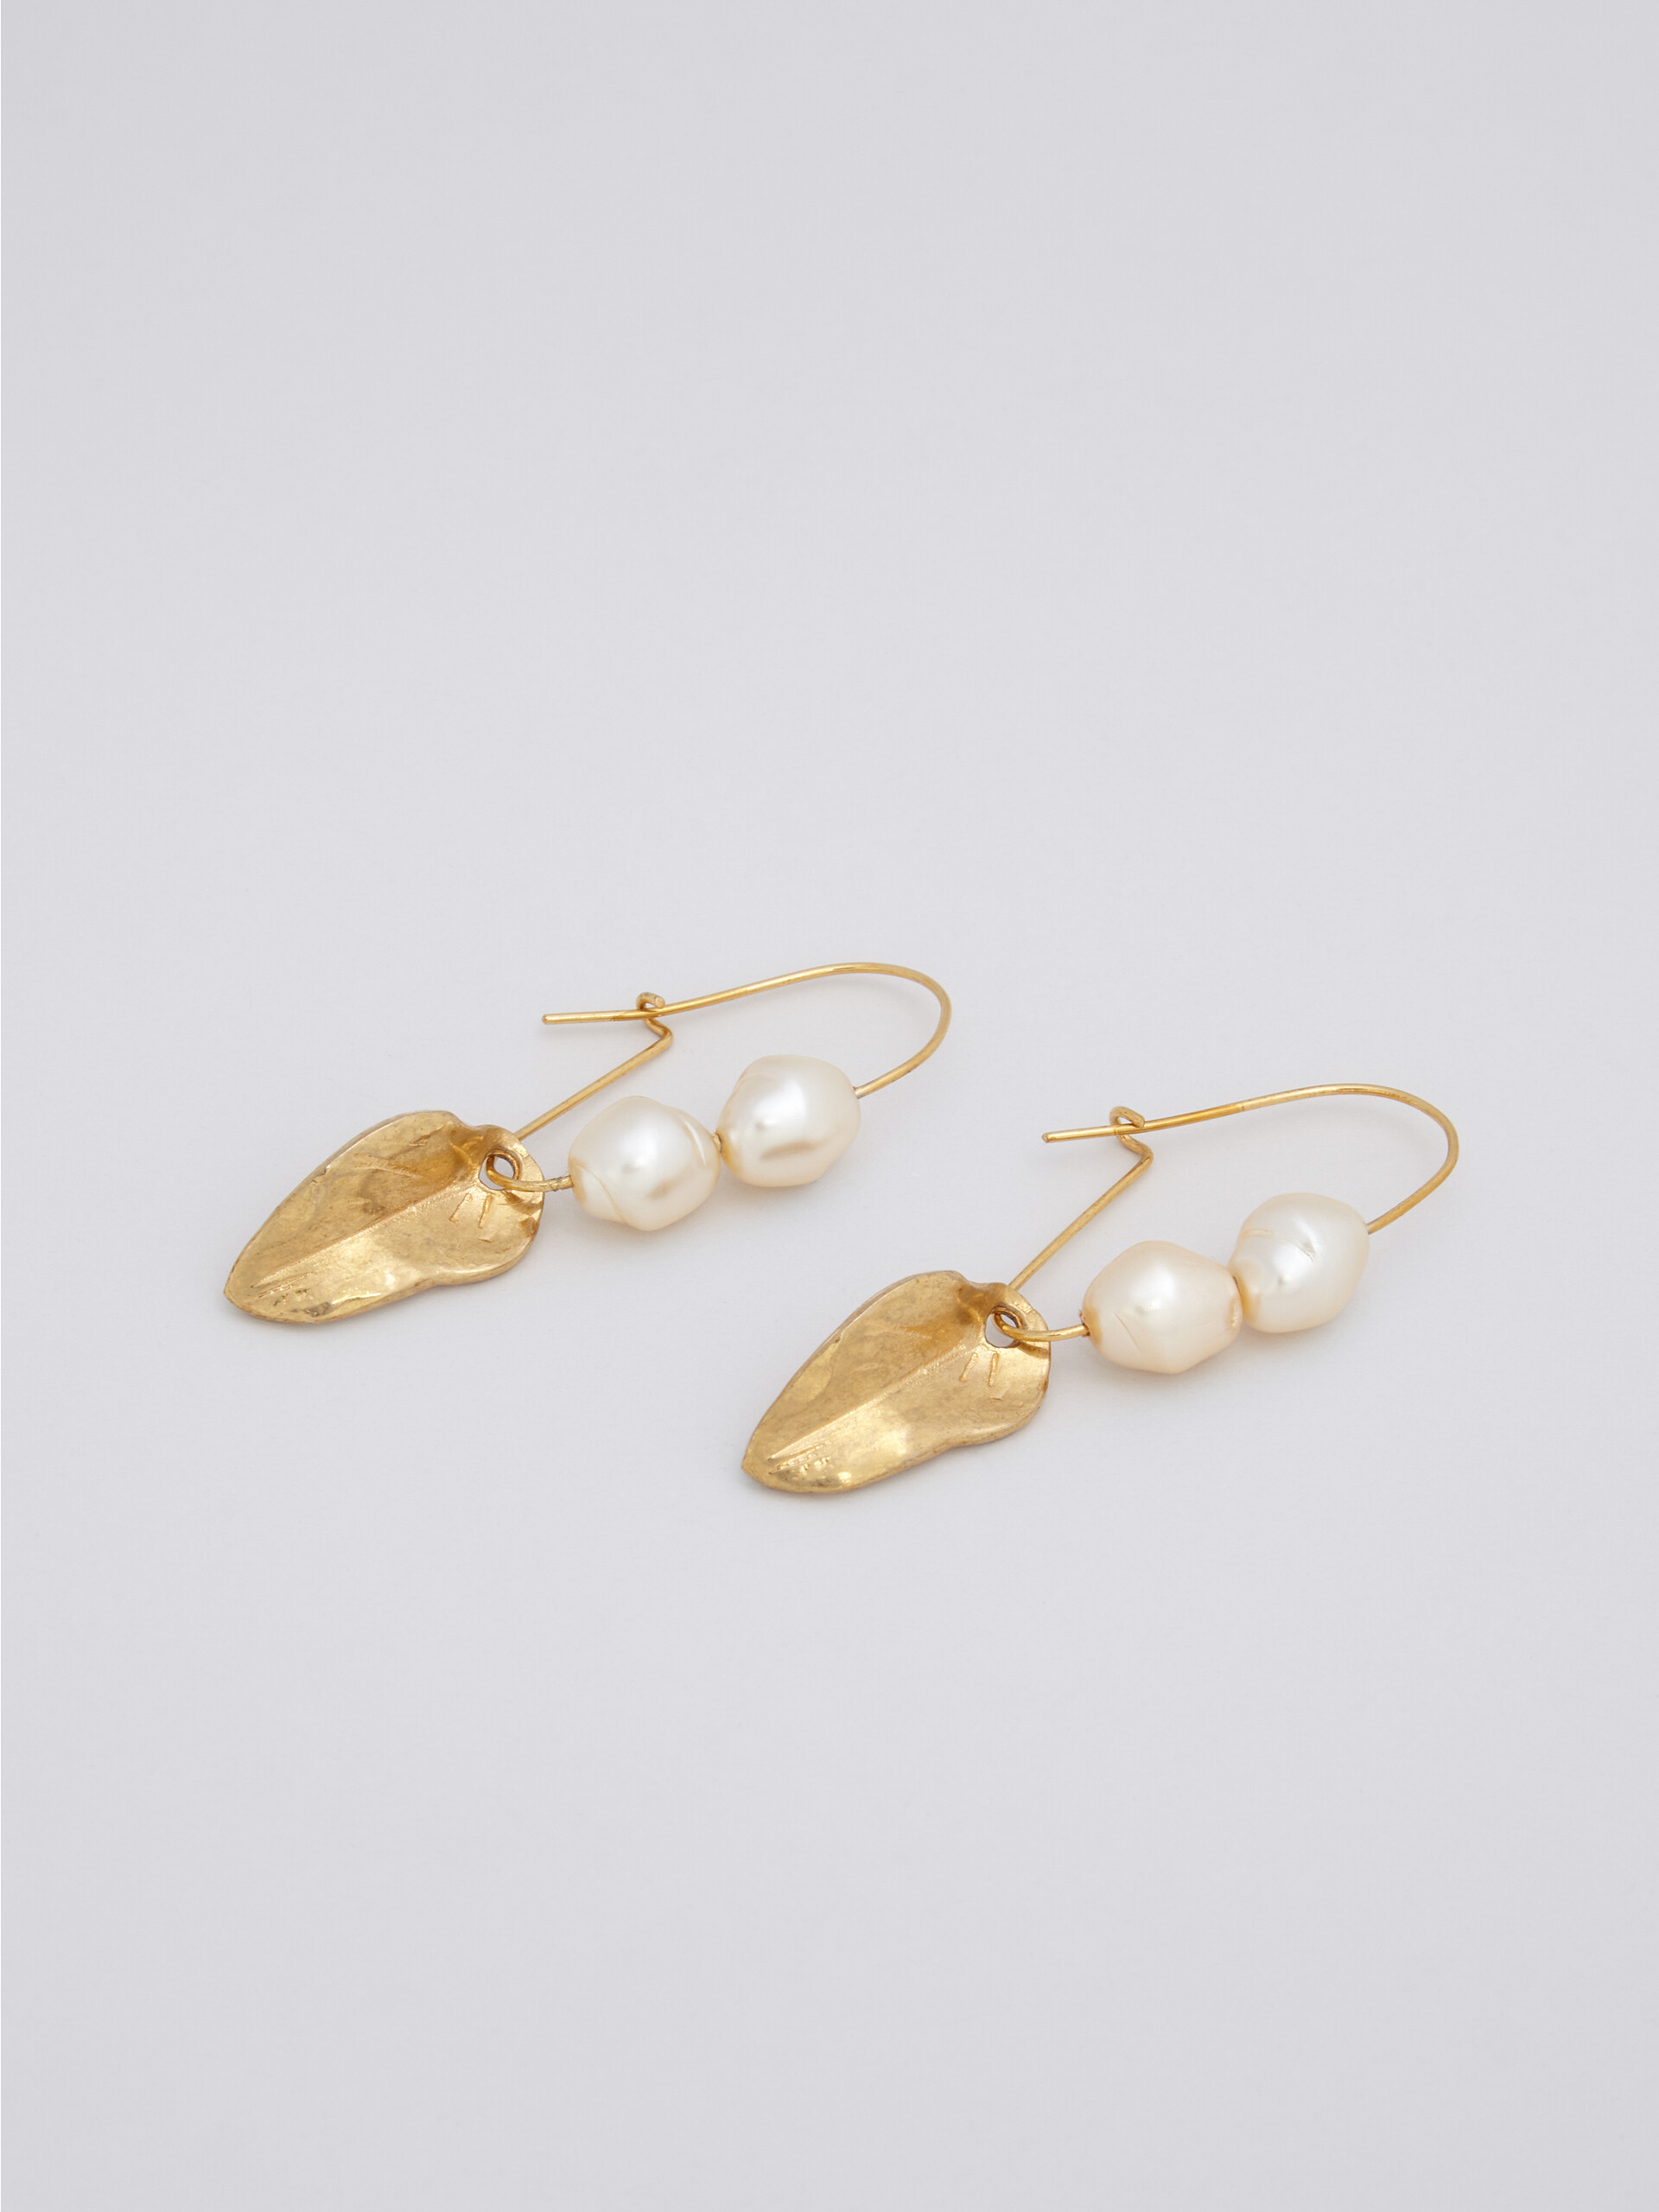 Orecchini a monachella NATURE in metallo dorato con perle e foglia - Orecchino - Image 3